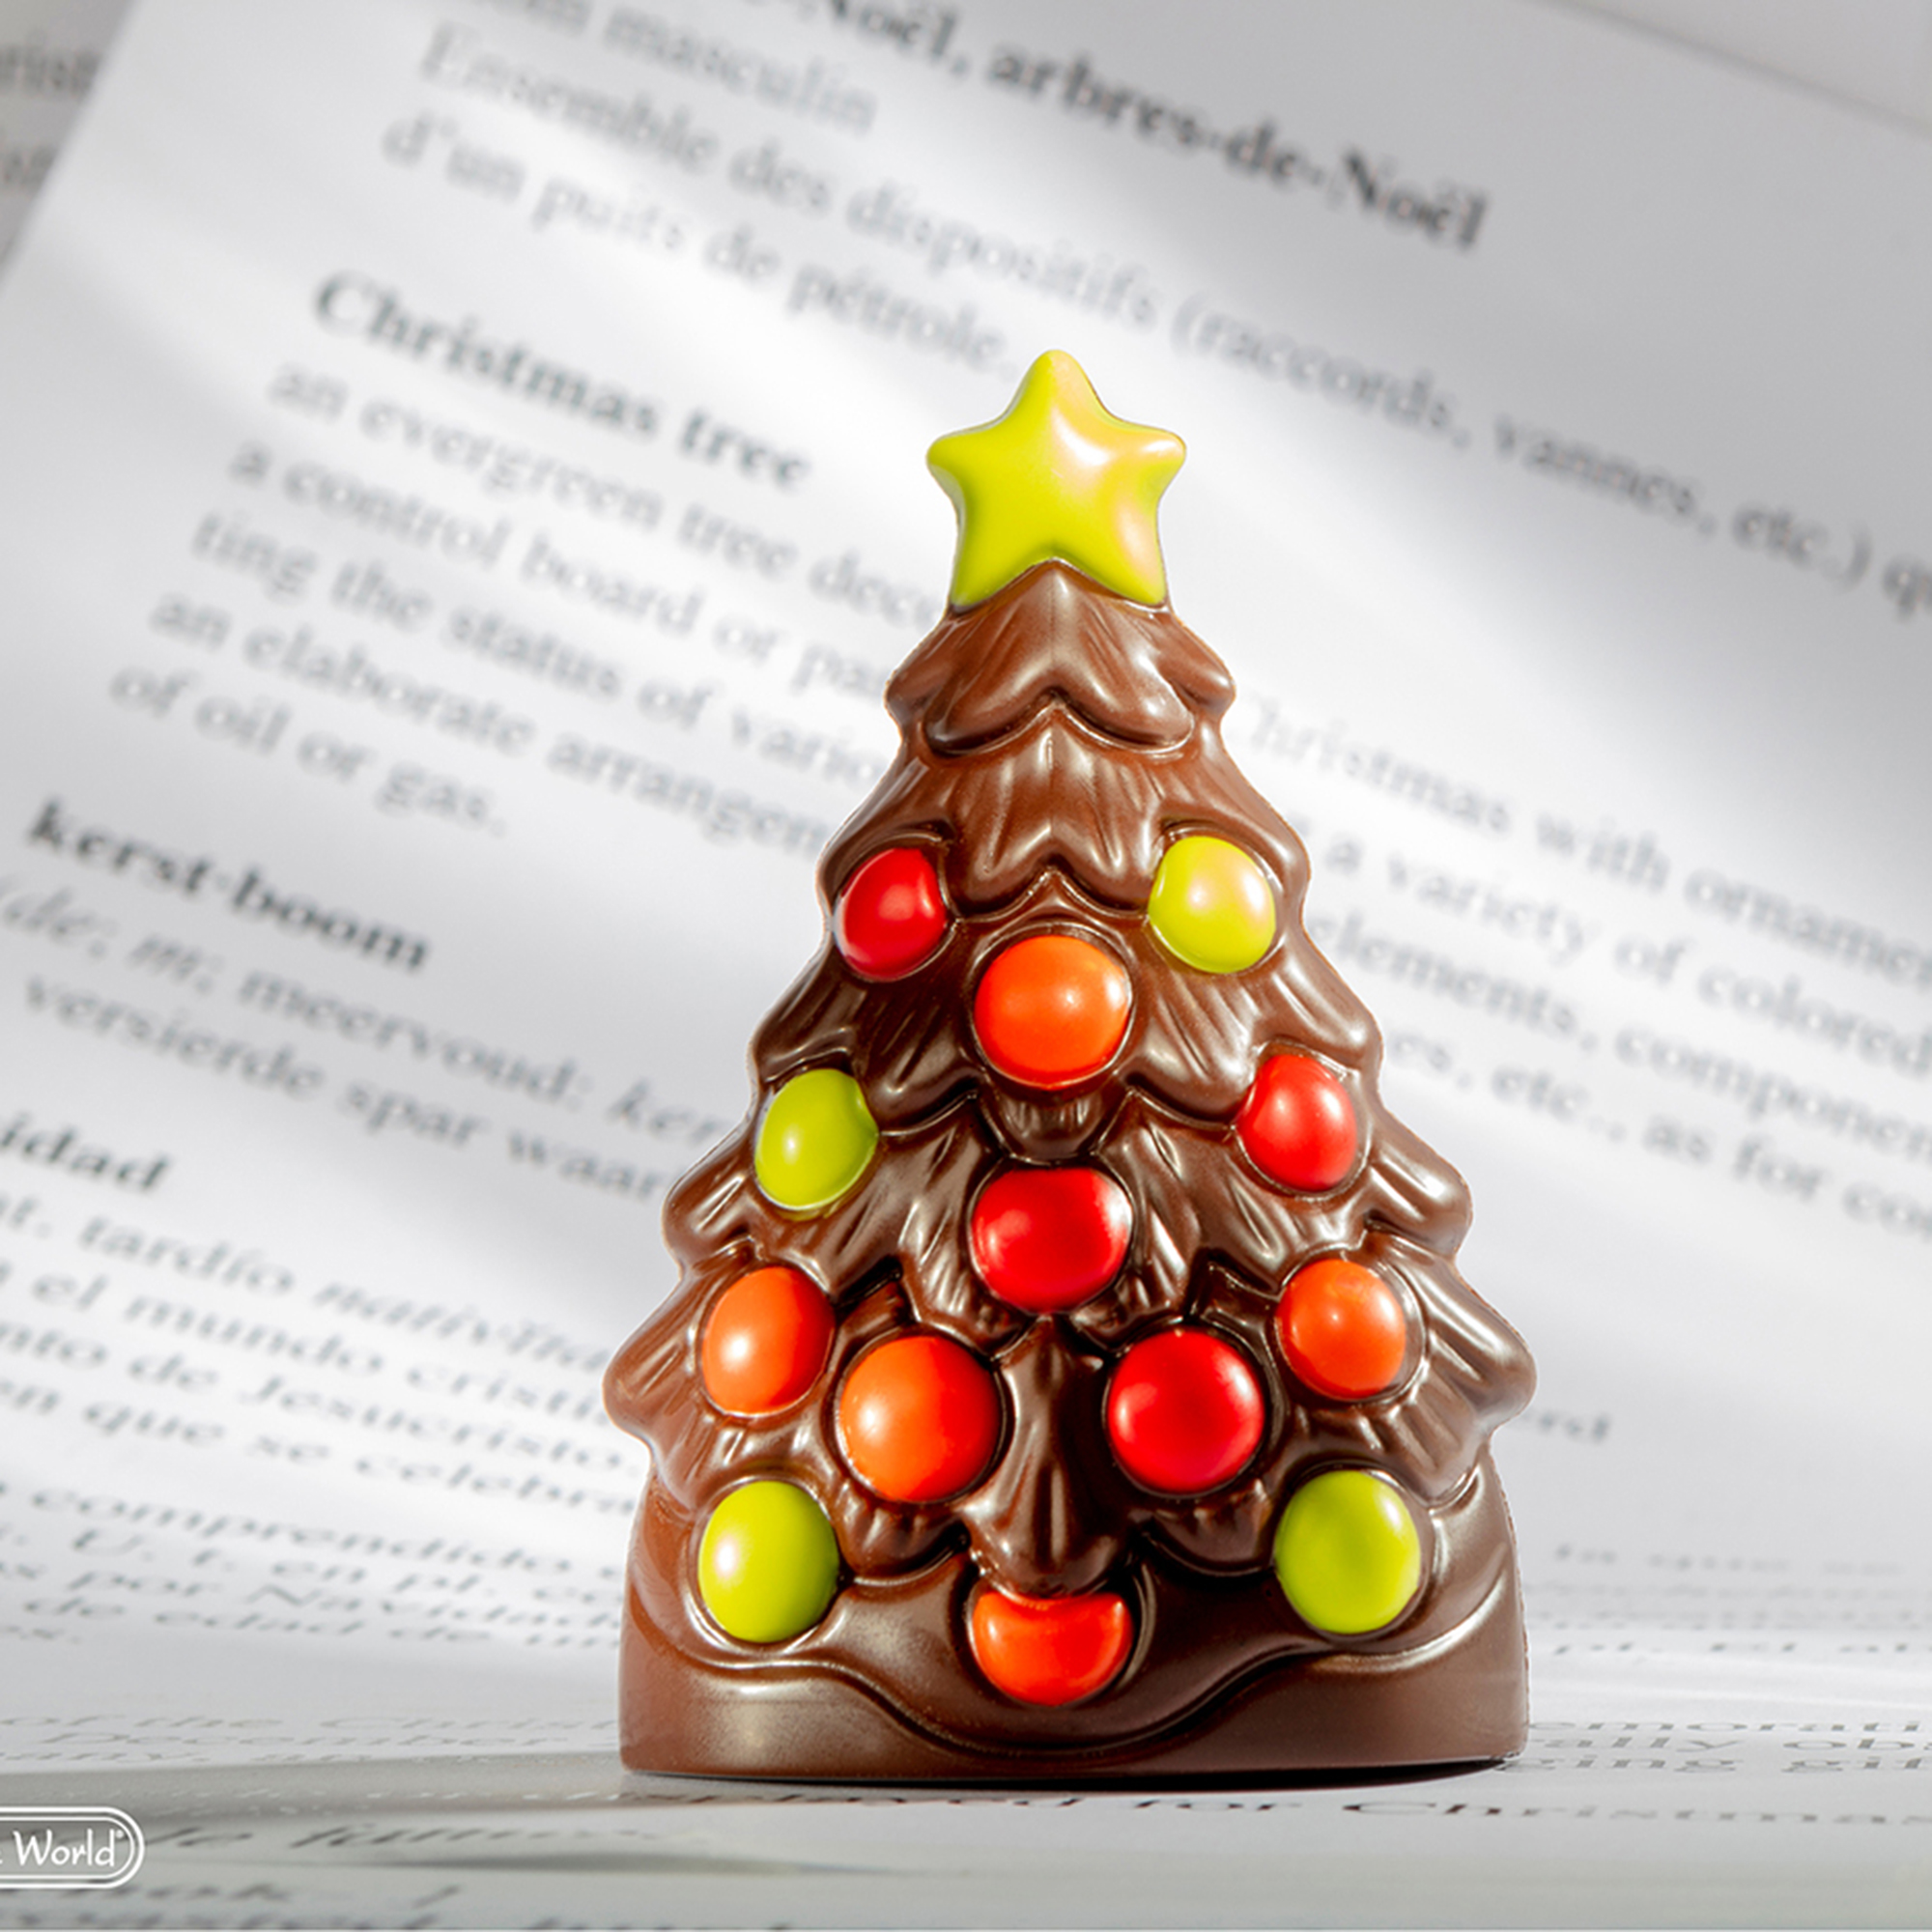 Chocolate World Polycarbonate Chocolate Mold, Christmas Tree, 4 Cavities image 2